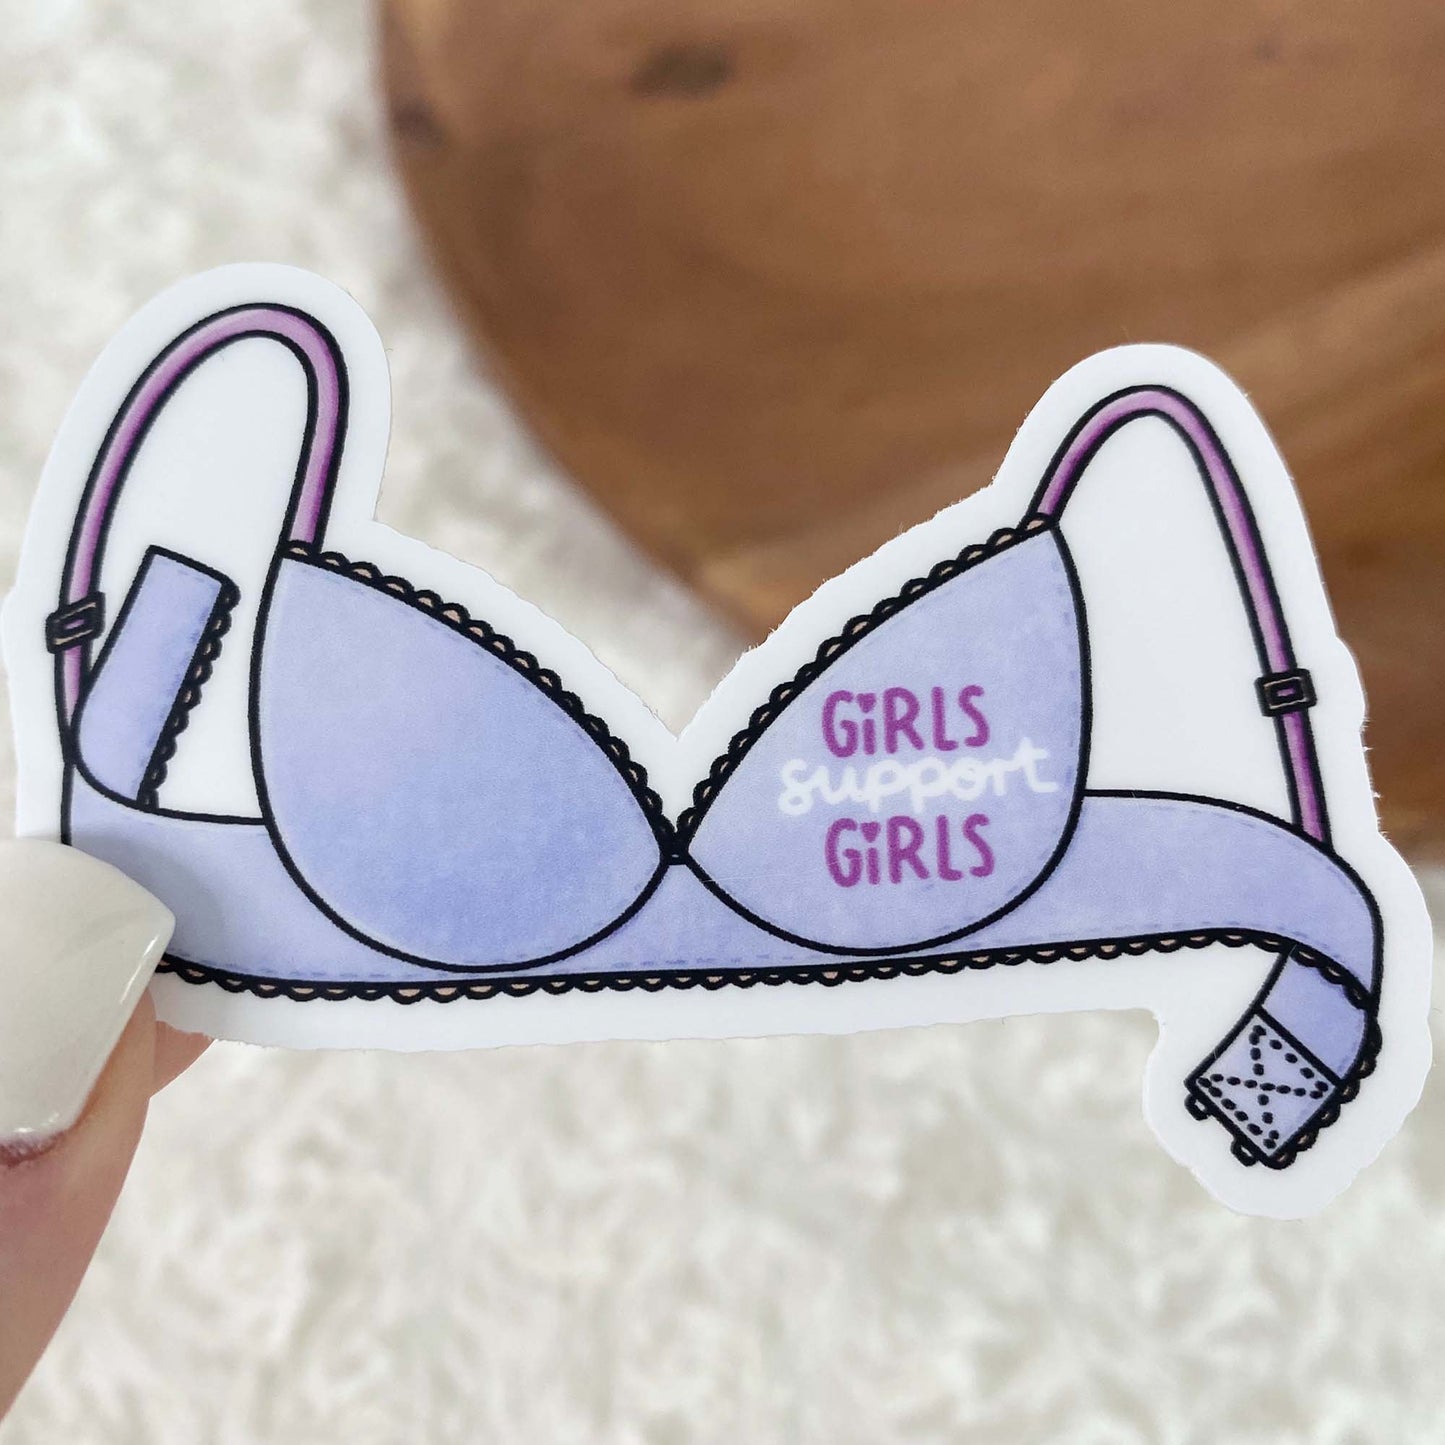 Girls Support Girls Bra Sticker